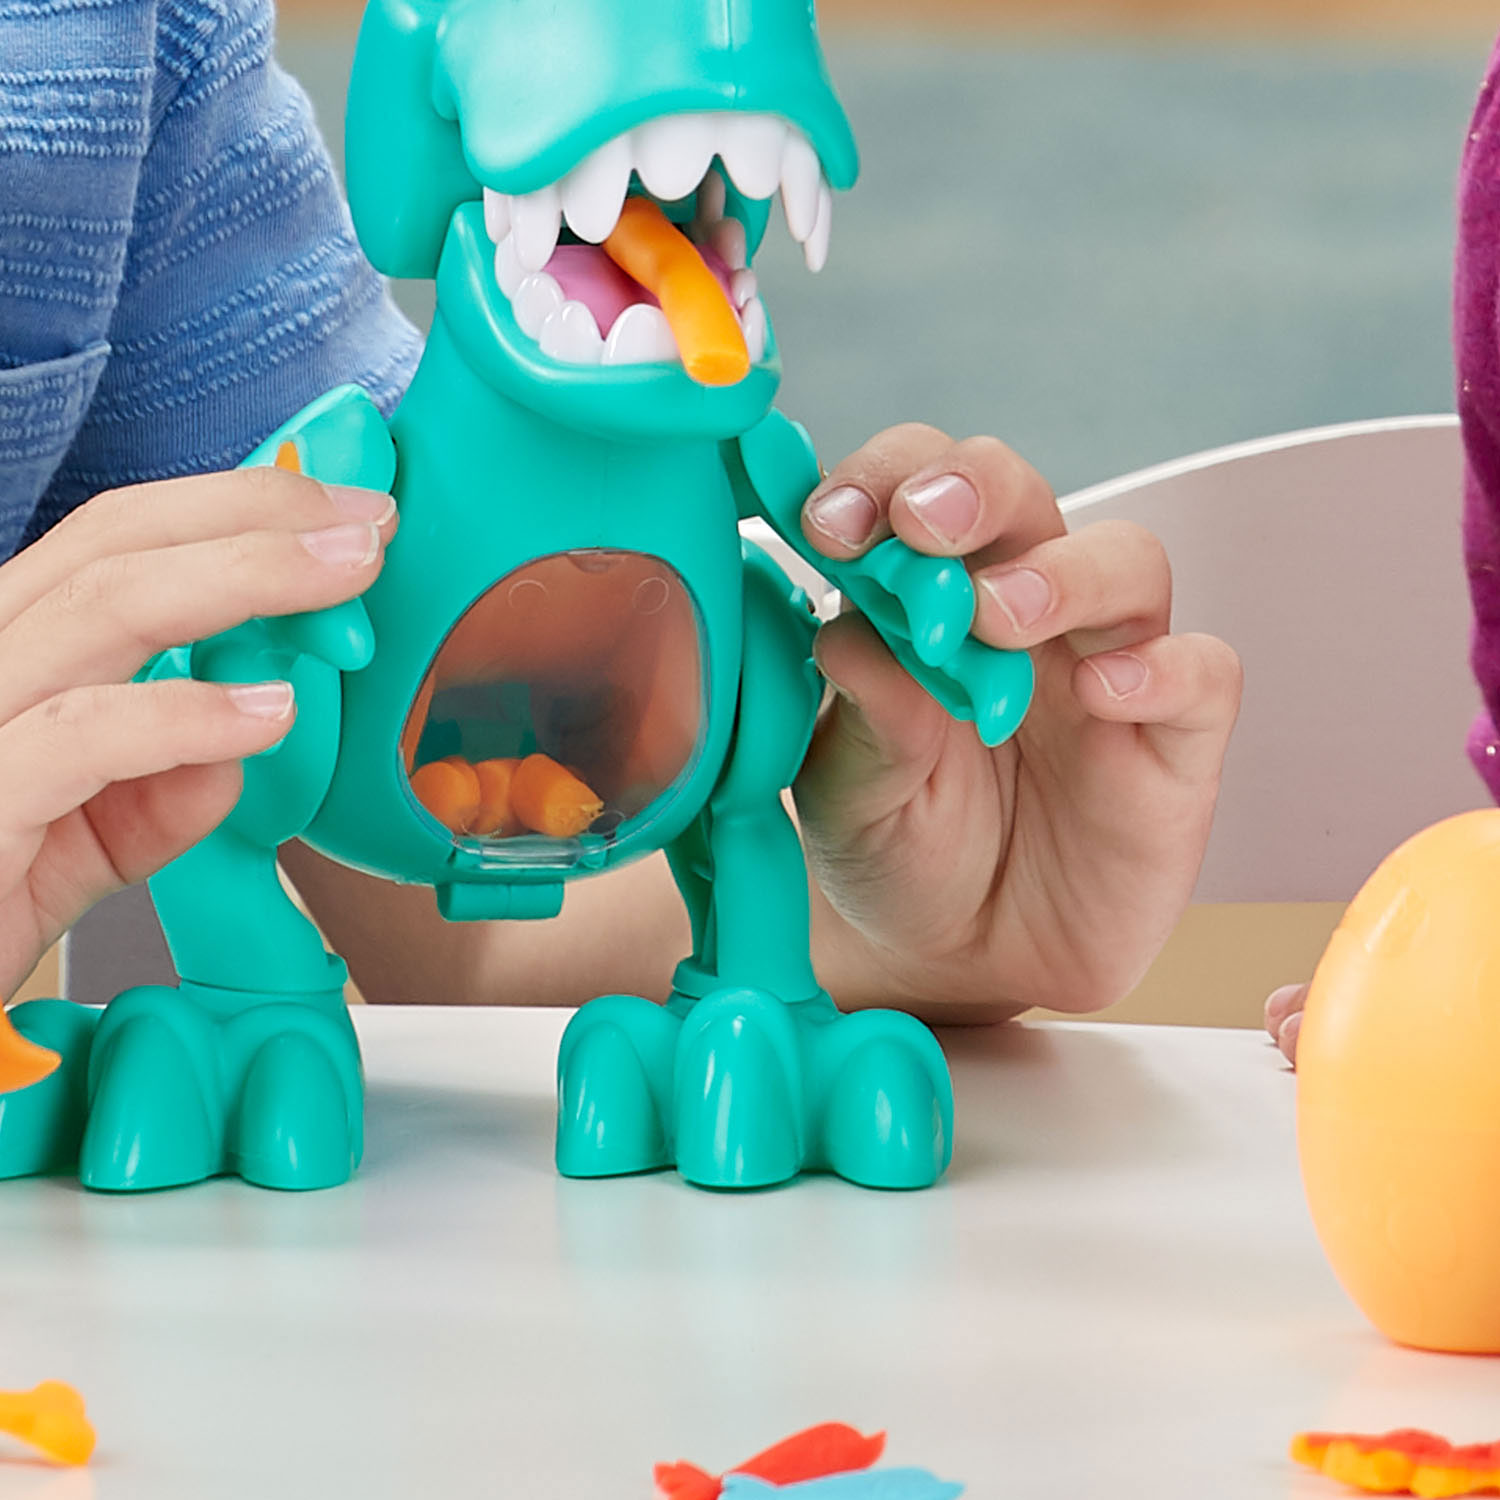 Play-Doh Dino Crew Happende T-Rex